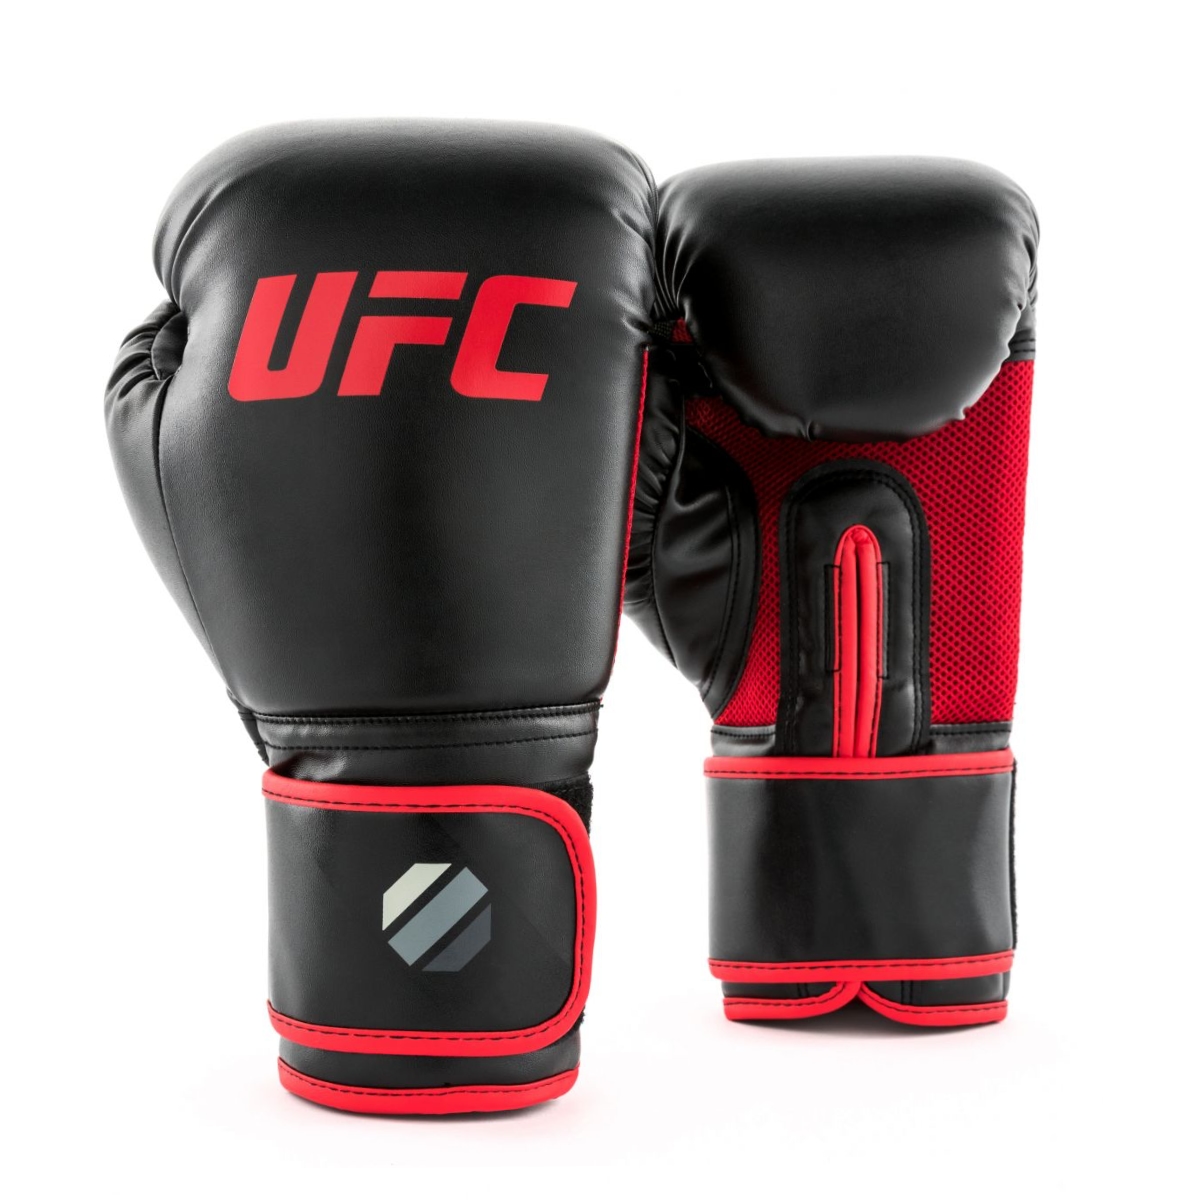 Billede af UFC Boxing Training Gloves (Muay Thai Training Gloves) - 14